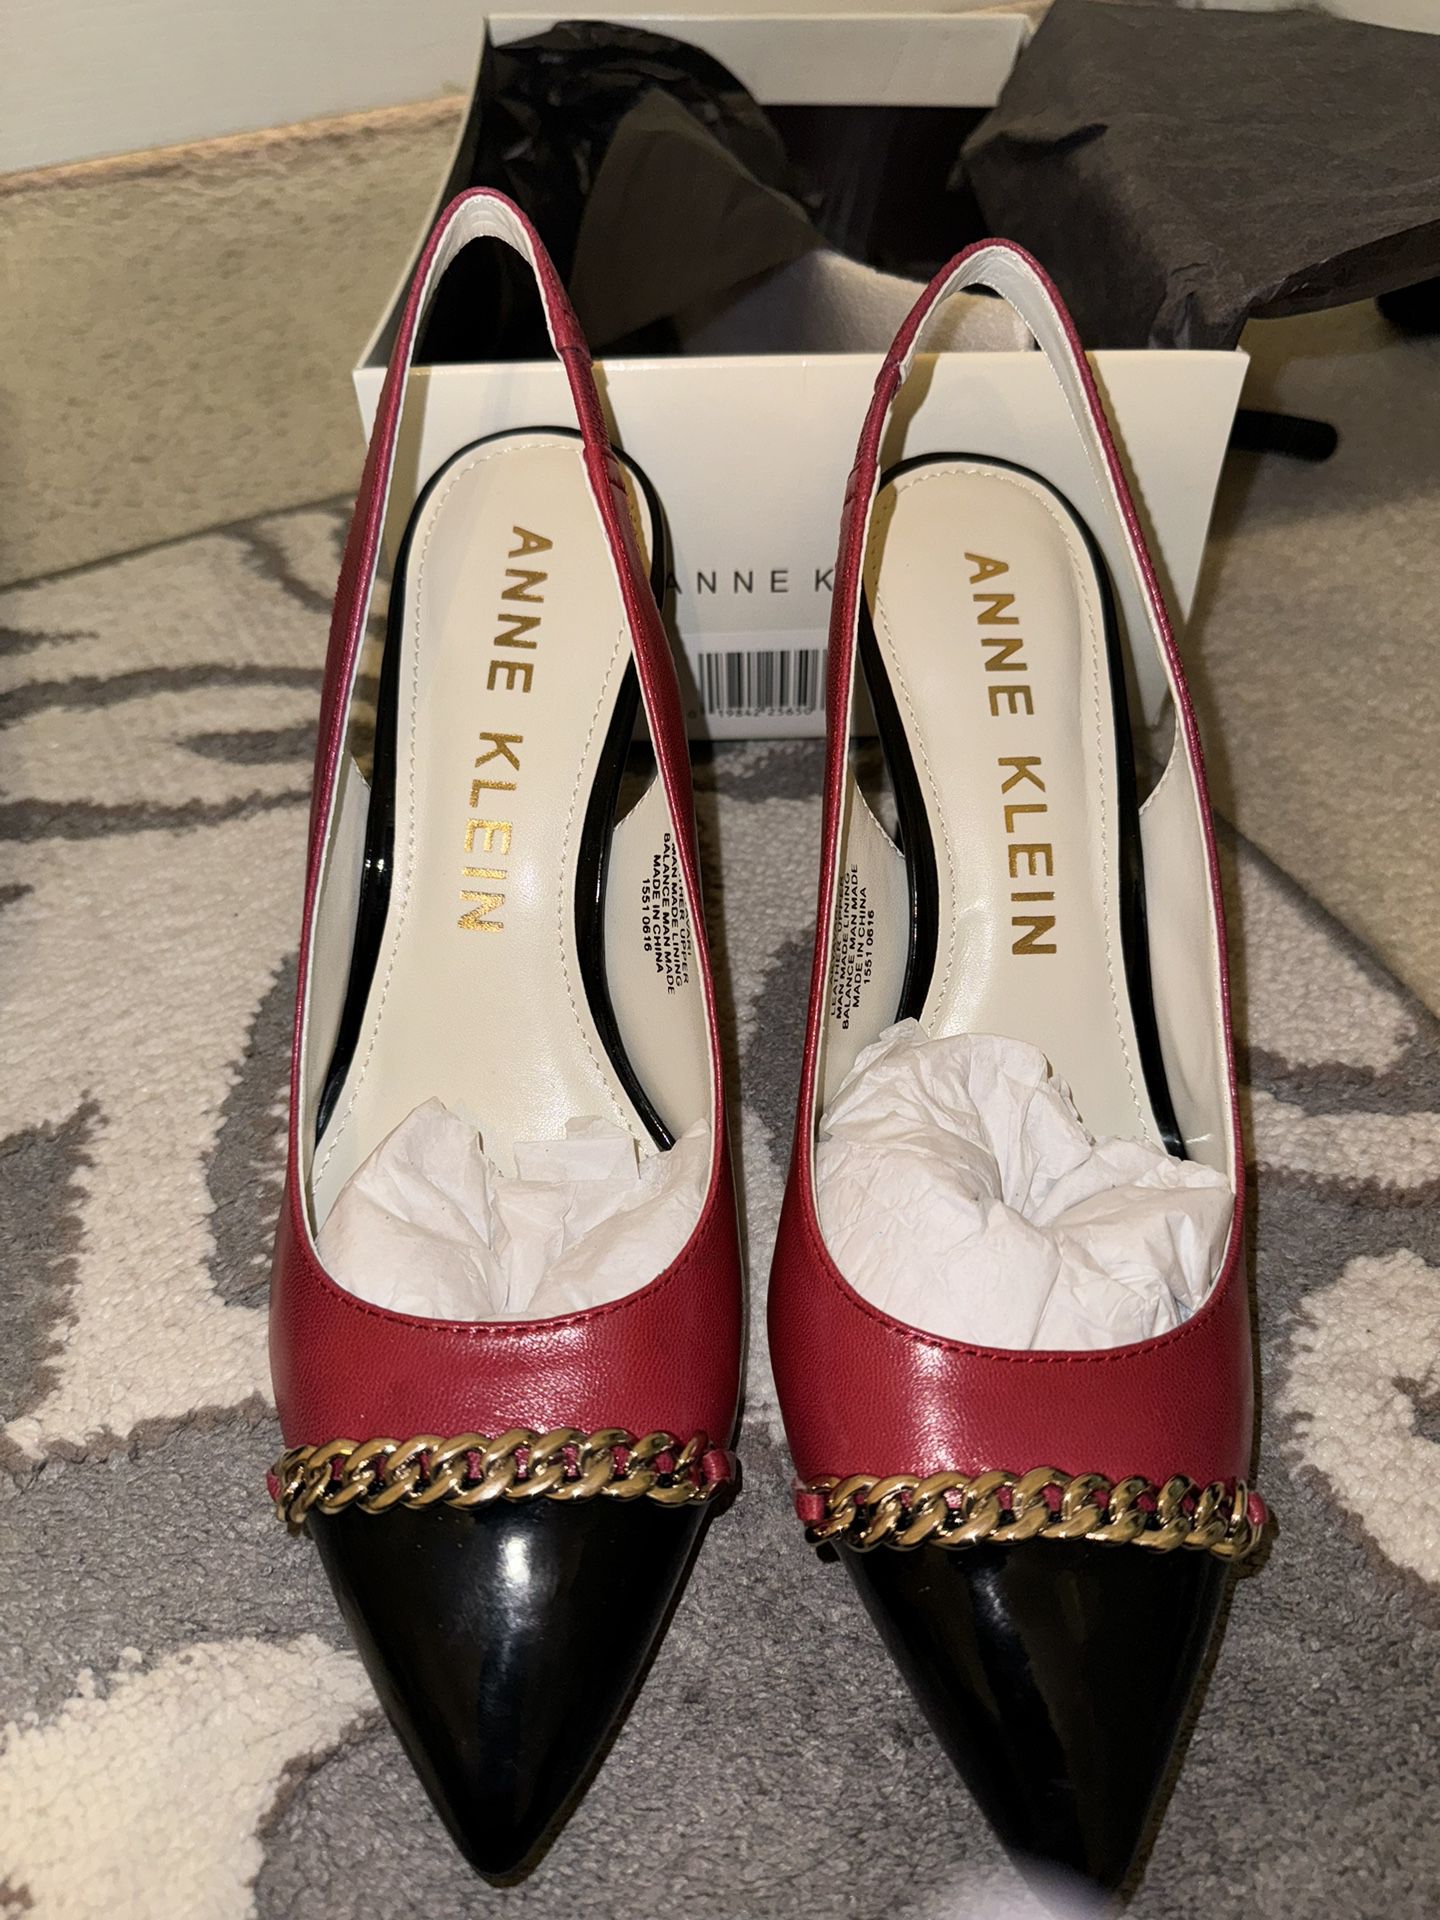 NEW Anne Klein Red/Black Heels Size 8.5